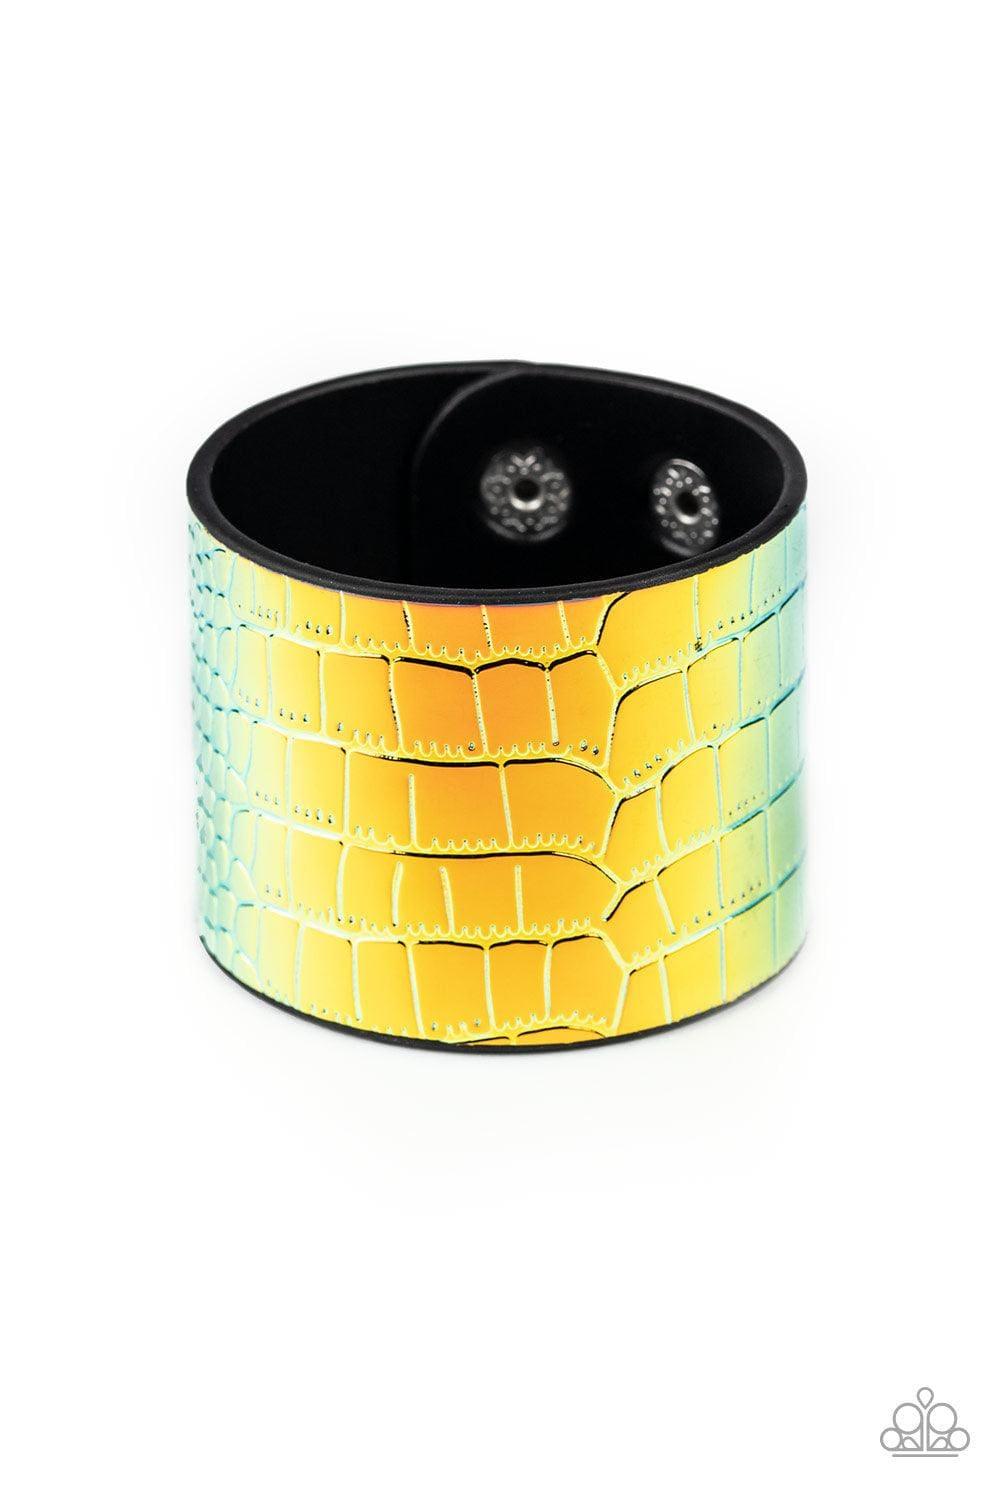 Paparazzi Accessories - Chroma Croc - Multicolor Snap Bracelet - Bling by JessieK